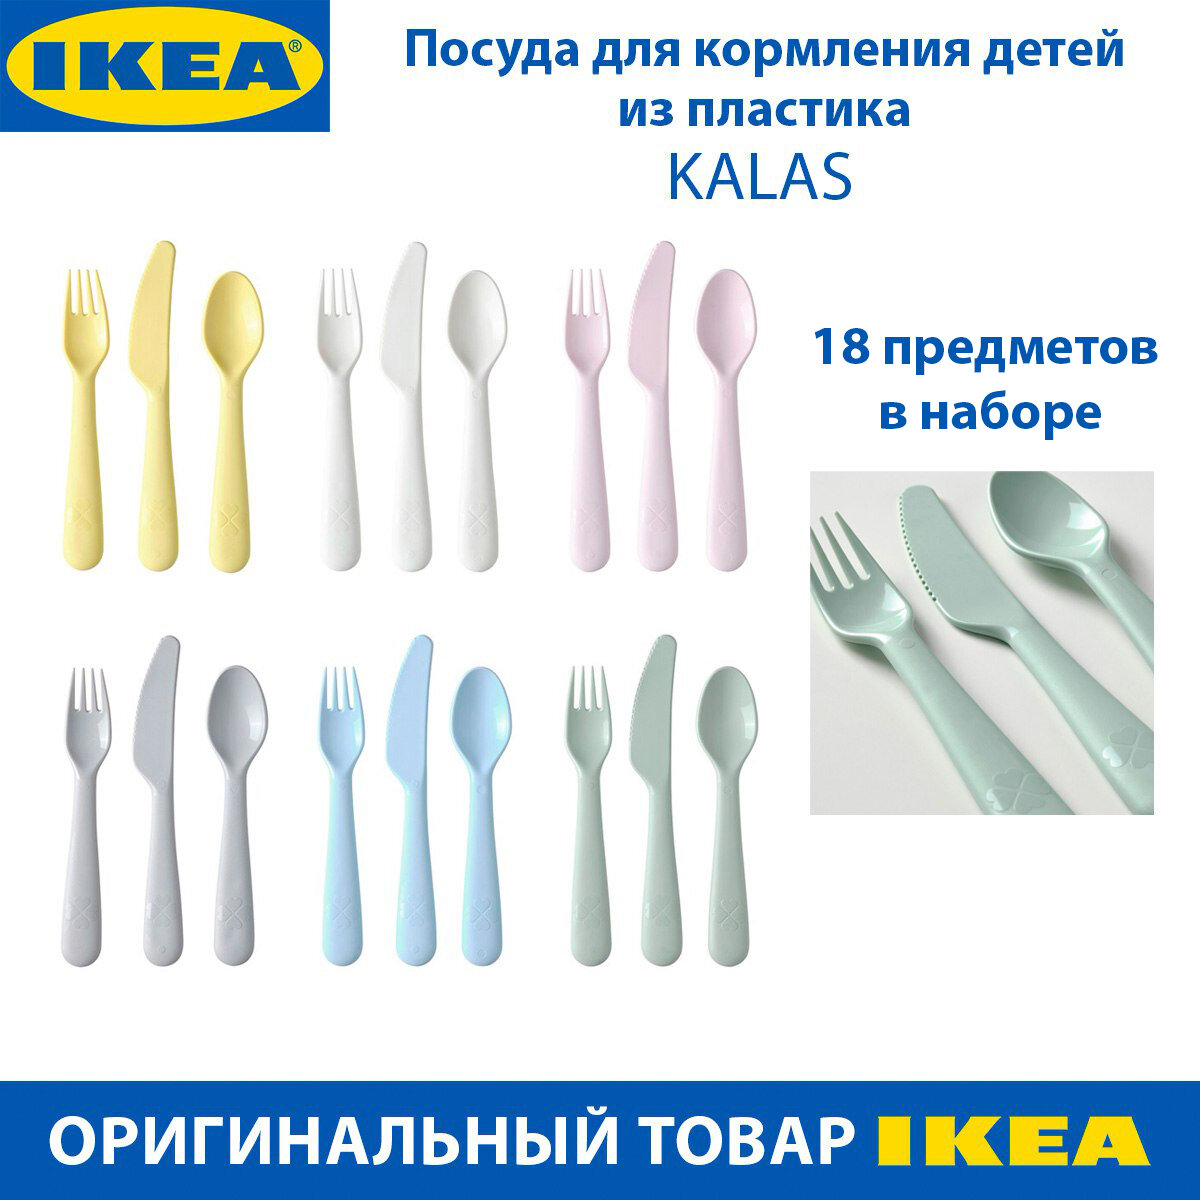 Посуда для кормления детей IKEA - KALAS (калас), пластик, 18 предметов, от 3-х лет, 1 набор